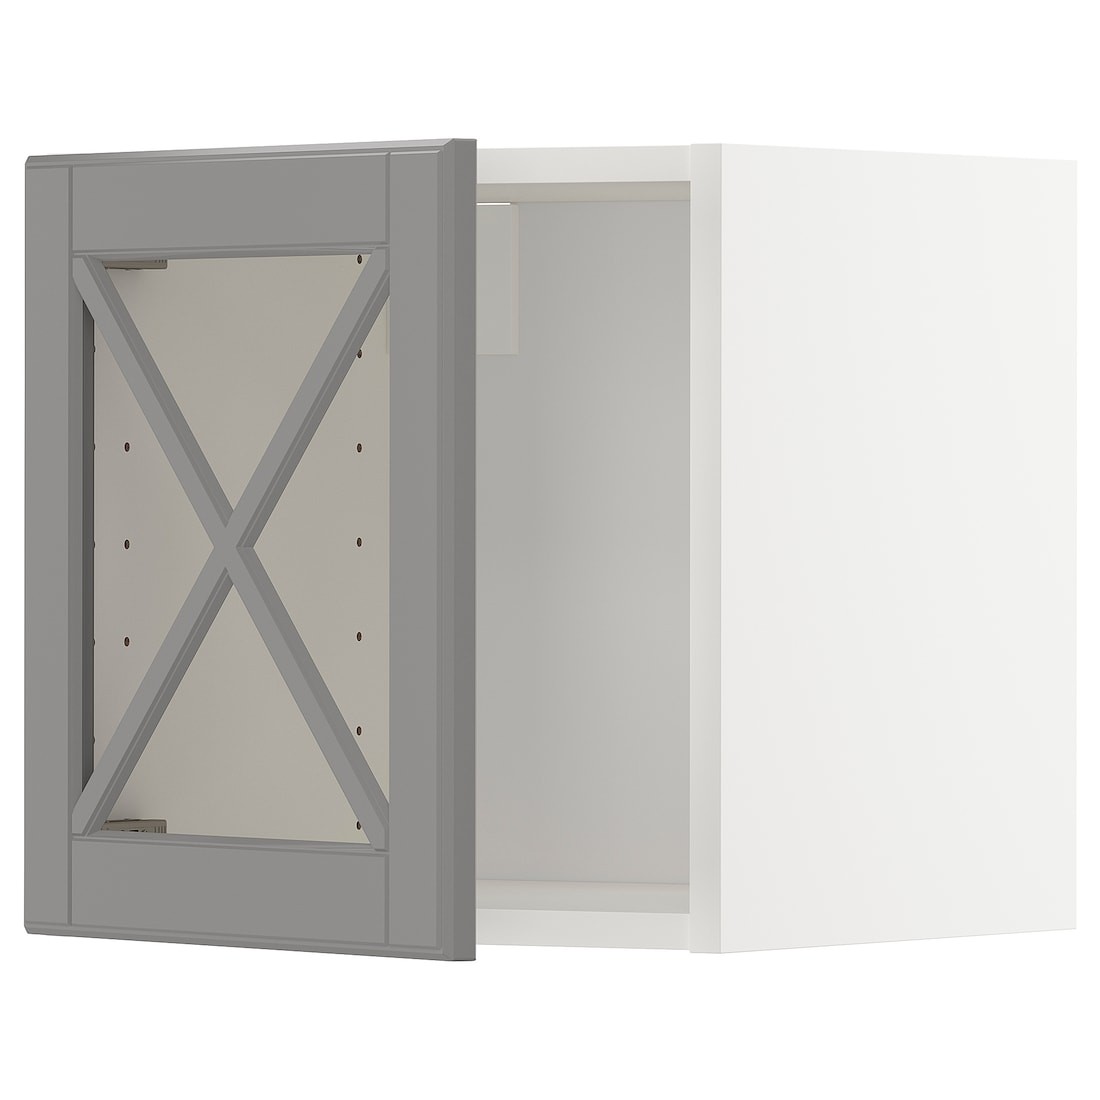 IKEA METOD МЕТОД Навісна шафа скляні двері, білий / Bodbyn сірий, 40x40 см 39395029 393.950.29